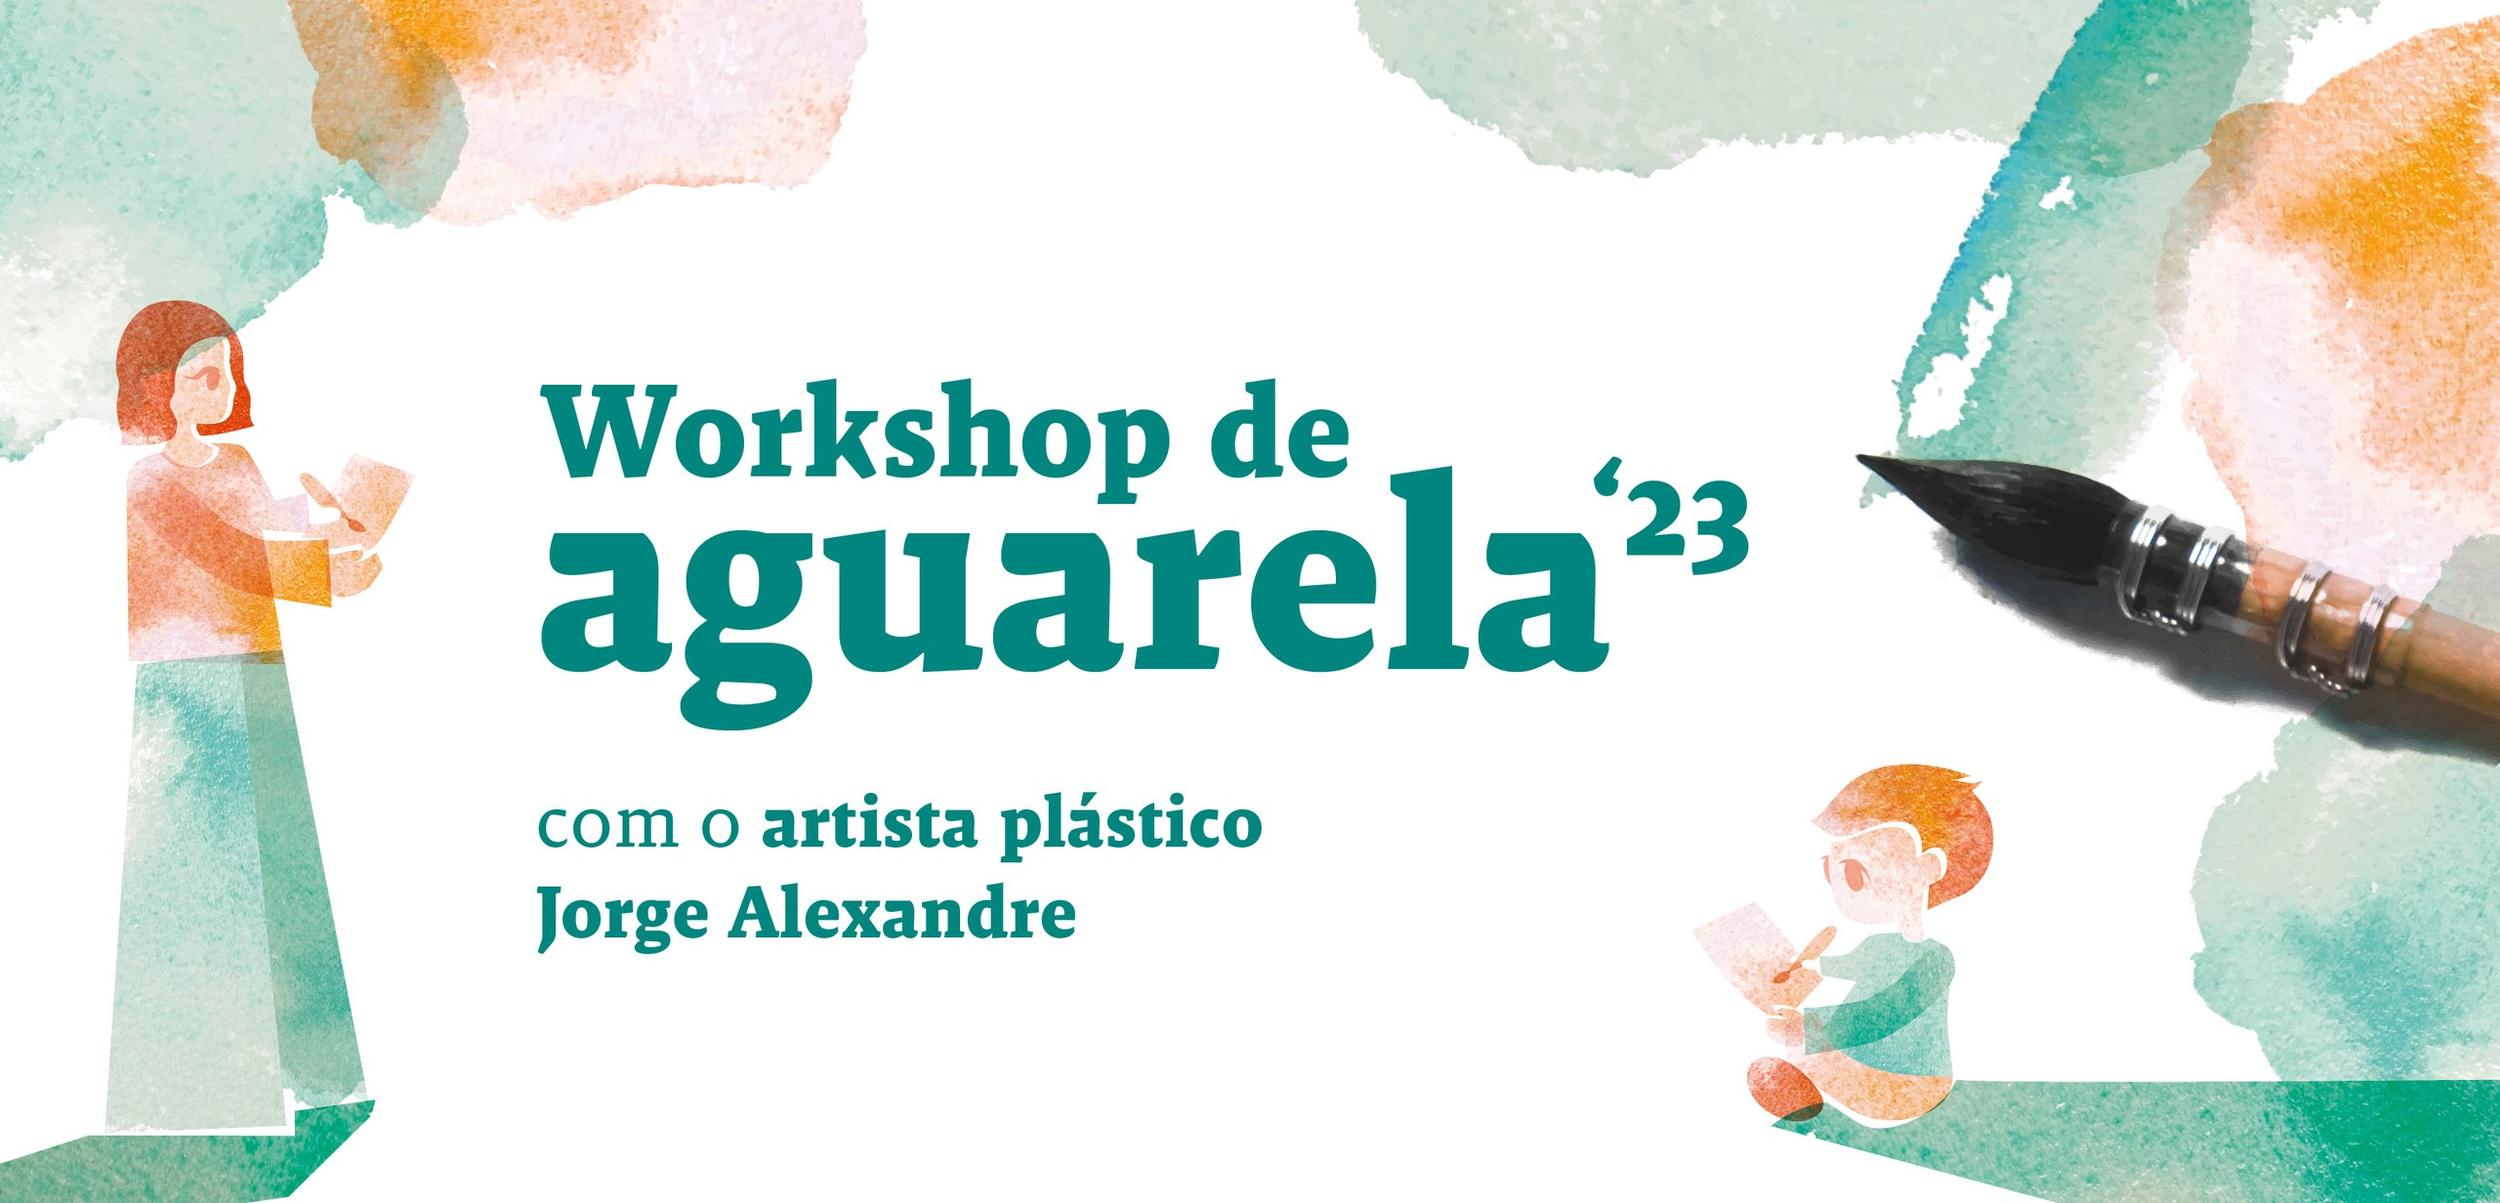 Workshop de Aguarela’ 23 